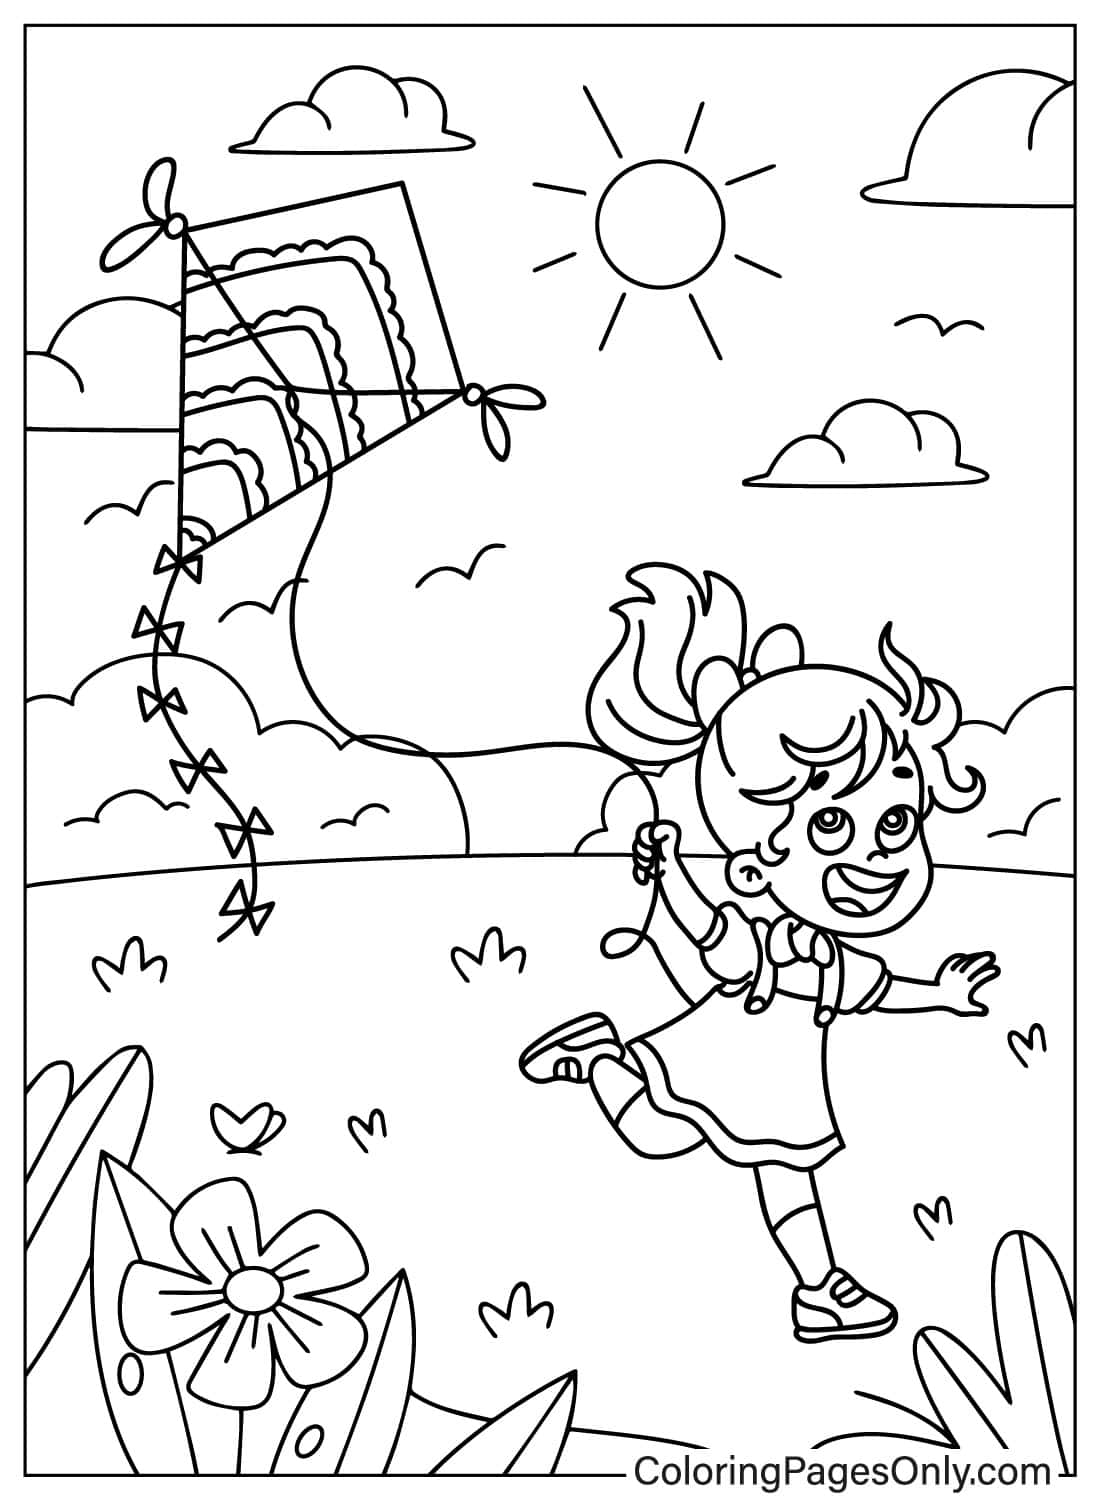 Счастливая маленькая девочка запускает воздушного змея на лужайке от воздушного змея